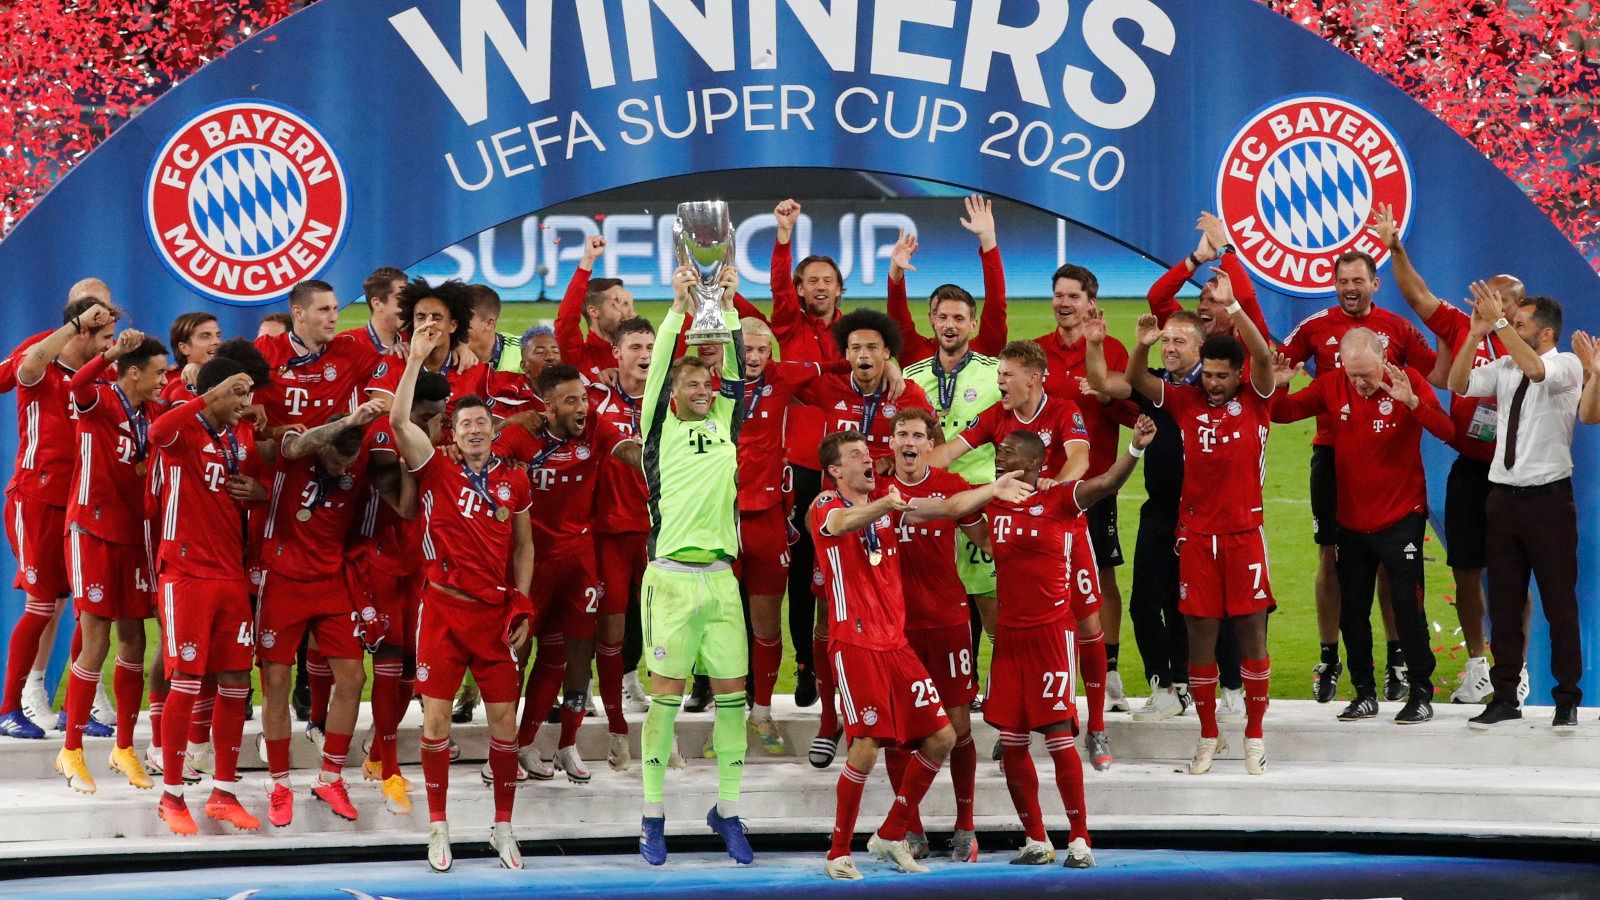 Neuer levanta la Supercopa de Europa rodeado de todos los jugadores del Bayern